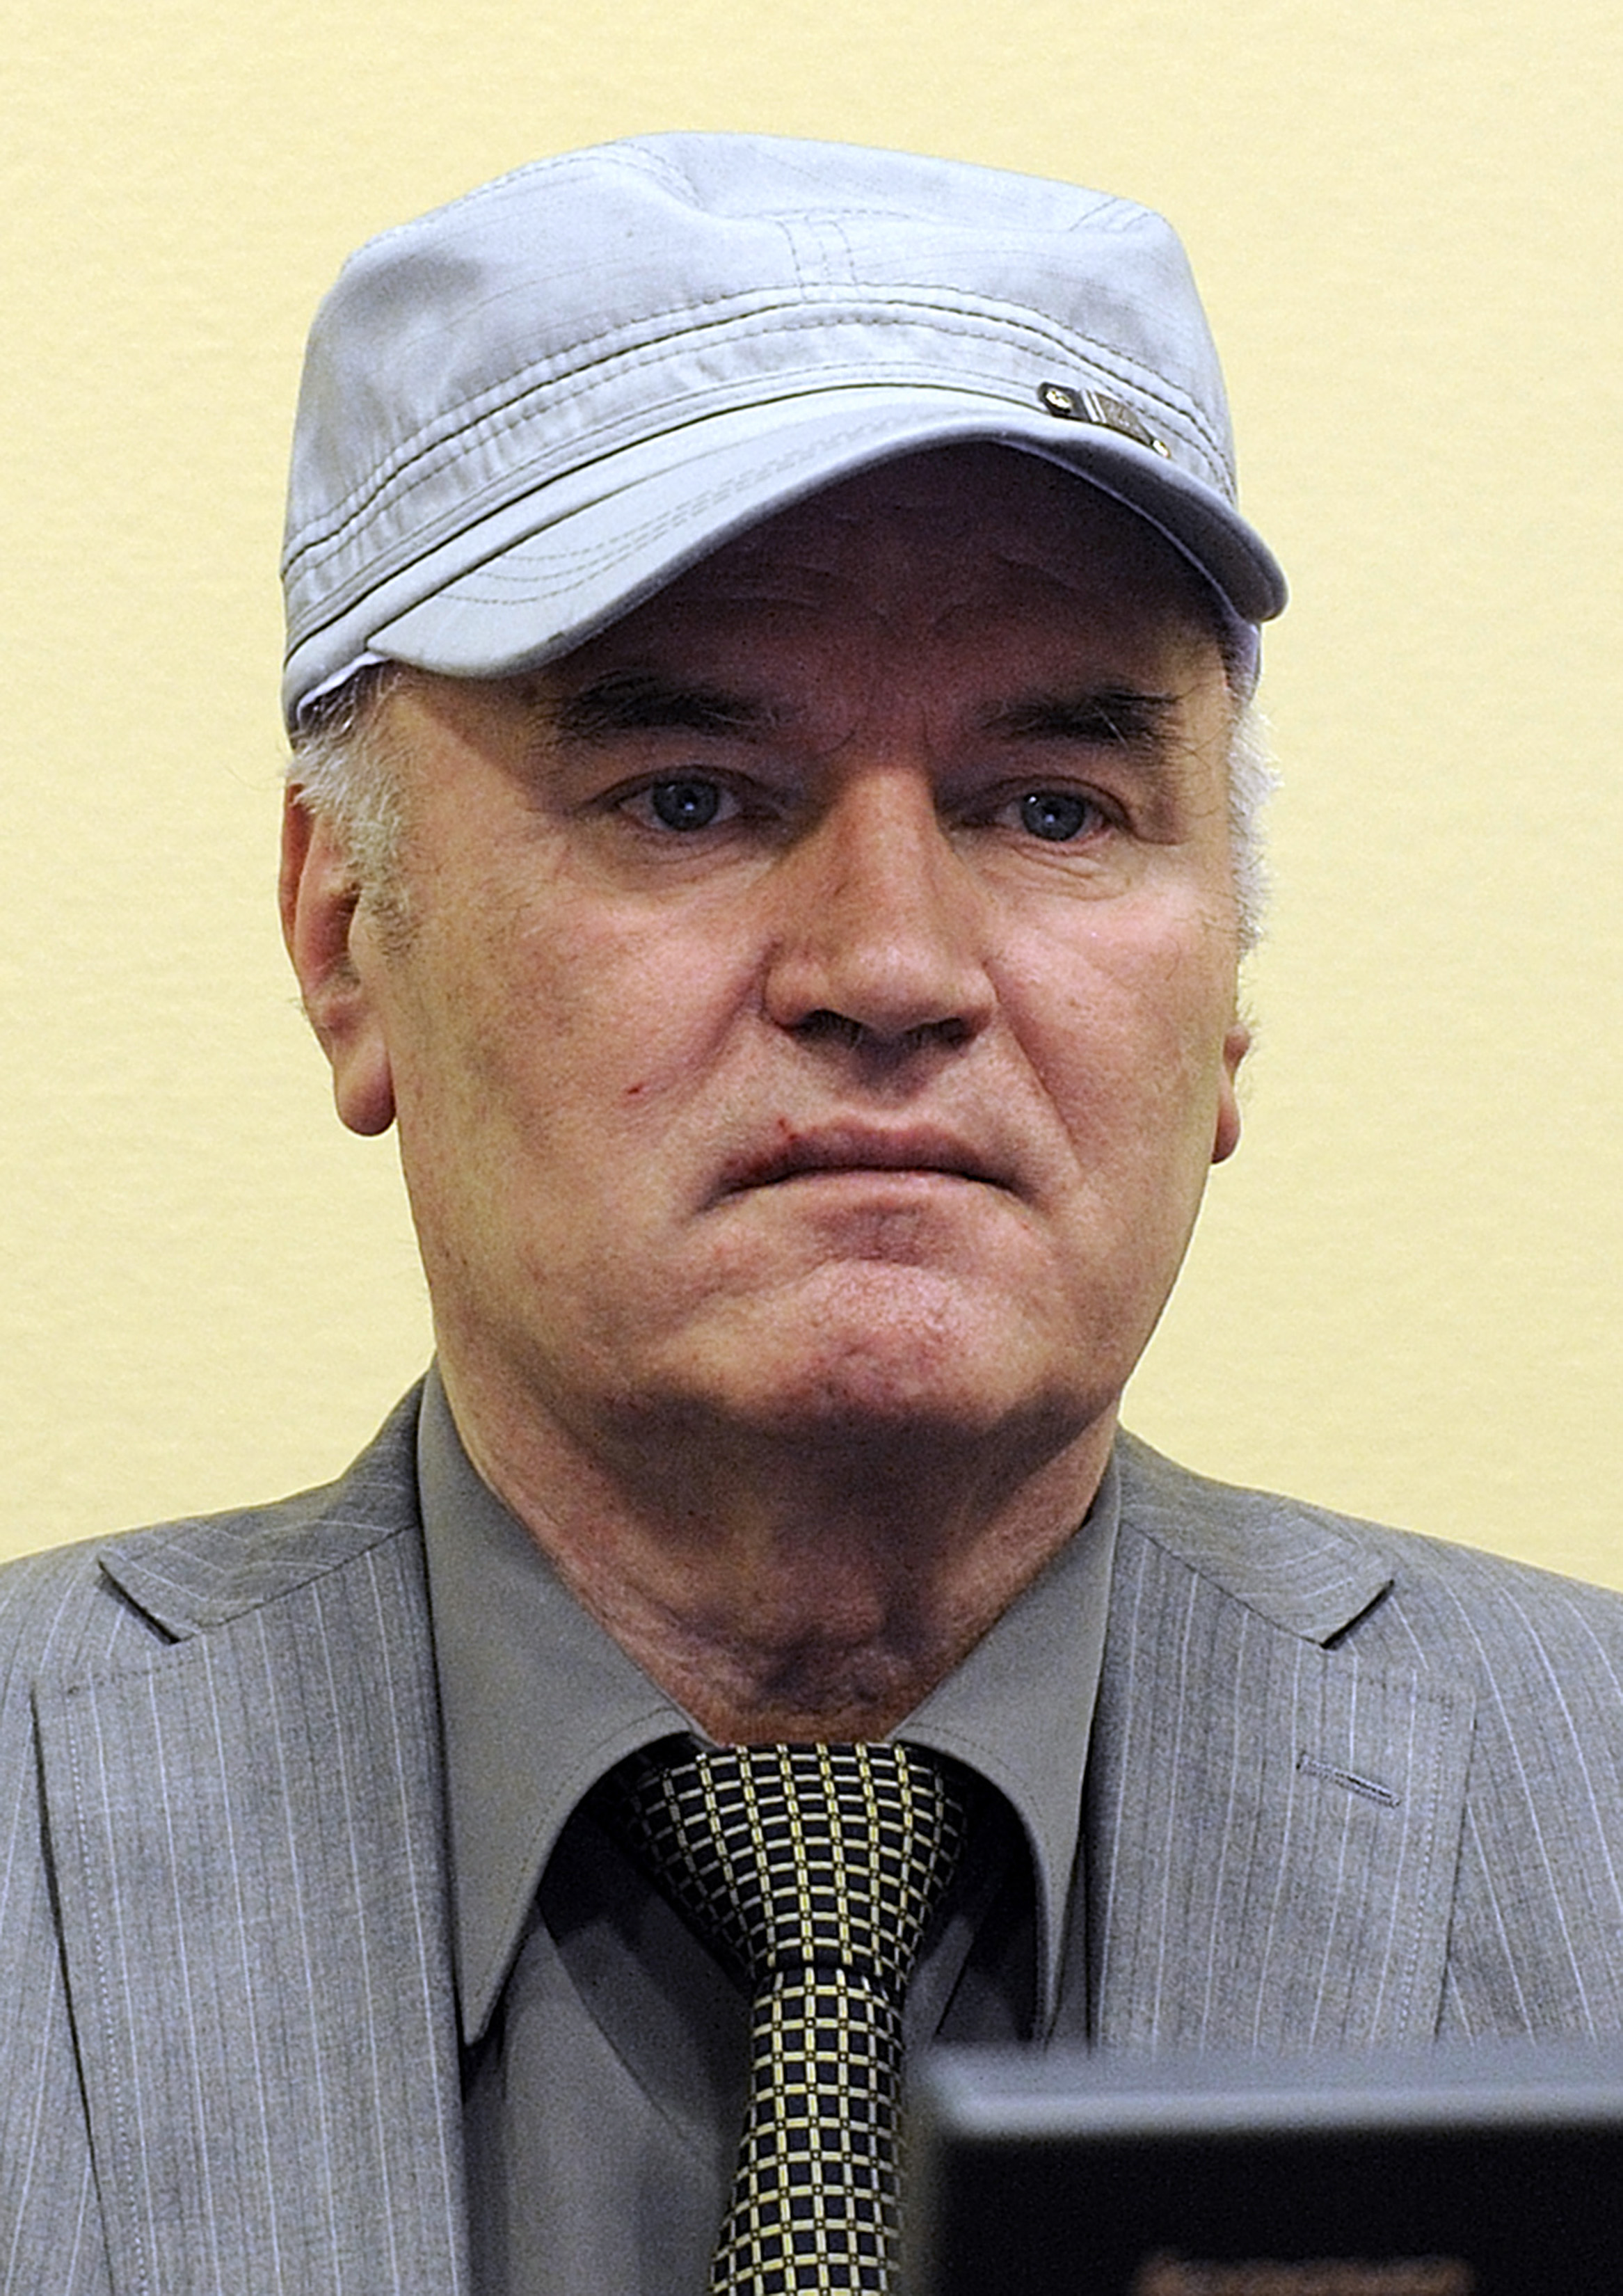 Ratko Mladic, överbefälhavare för de bosniensserbiska styrkorna, står anklagad för folkmord och brott mot mänskligheten